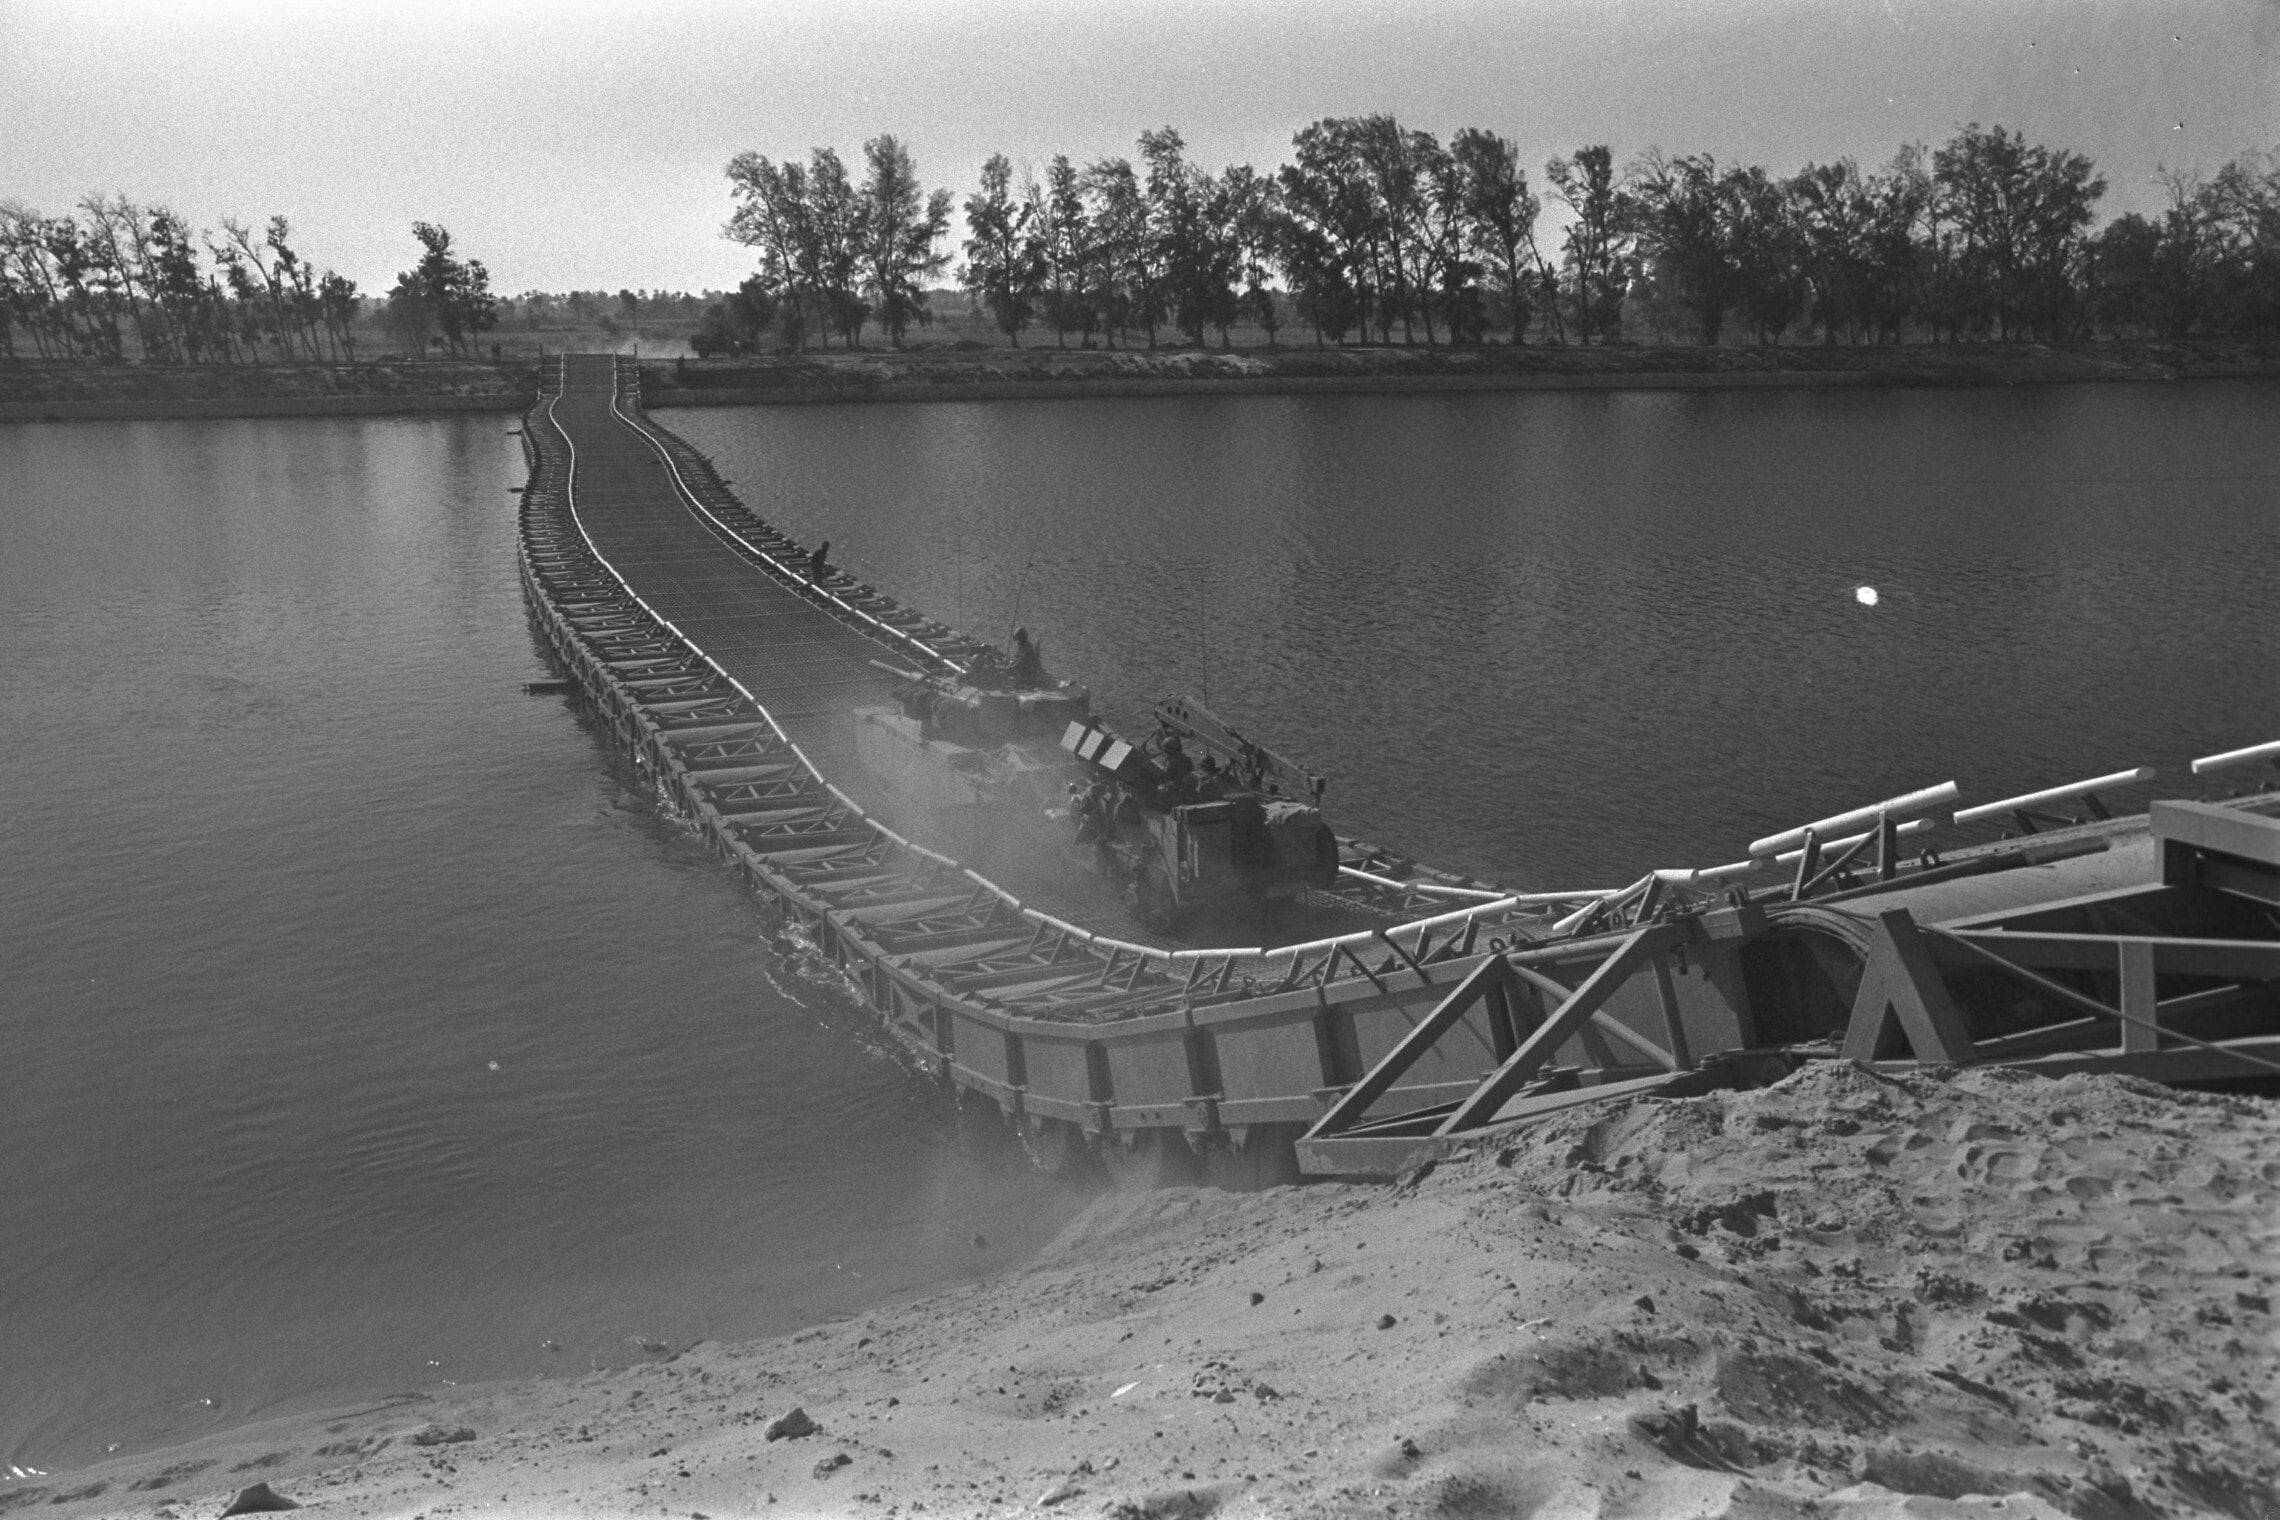 שריון צה"ל עובר על גשר צף מעל תעלת סואץ, 25 באוקטובר 1973 (צילום: רון אילן, לע"מ)